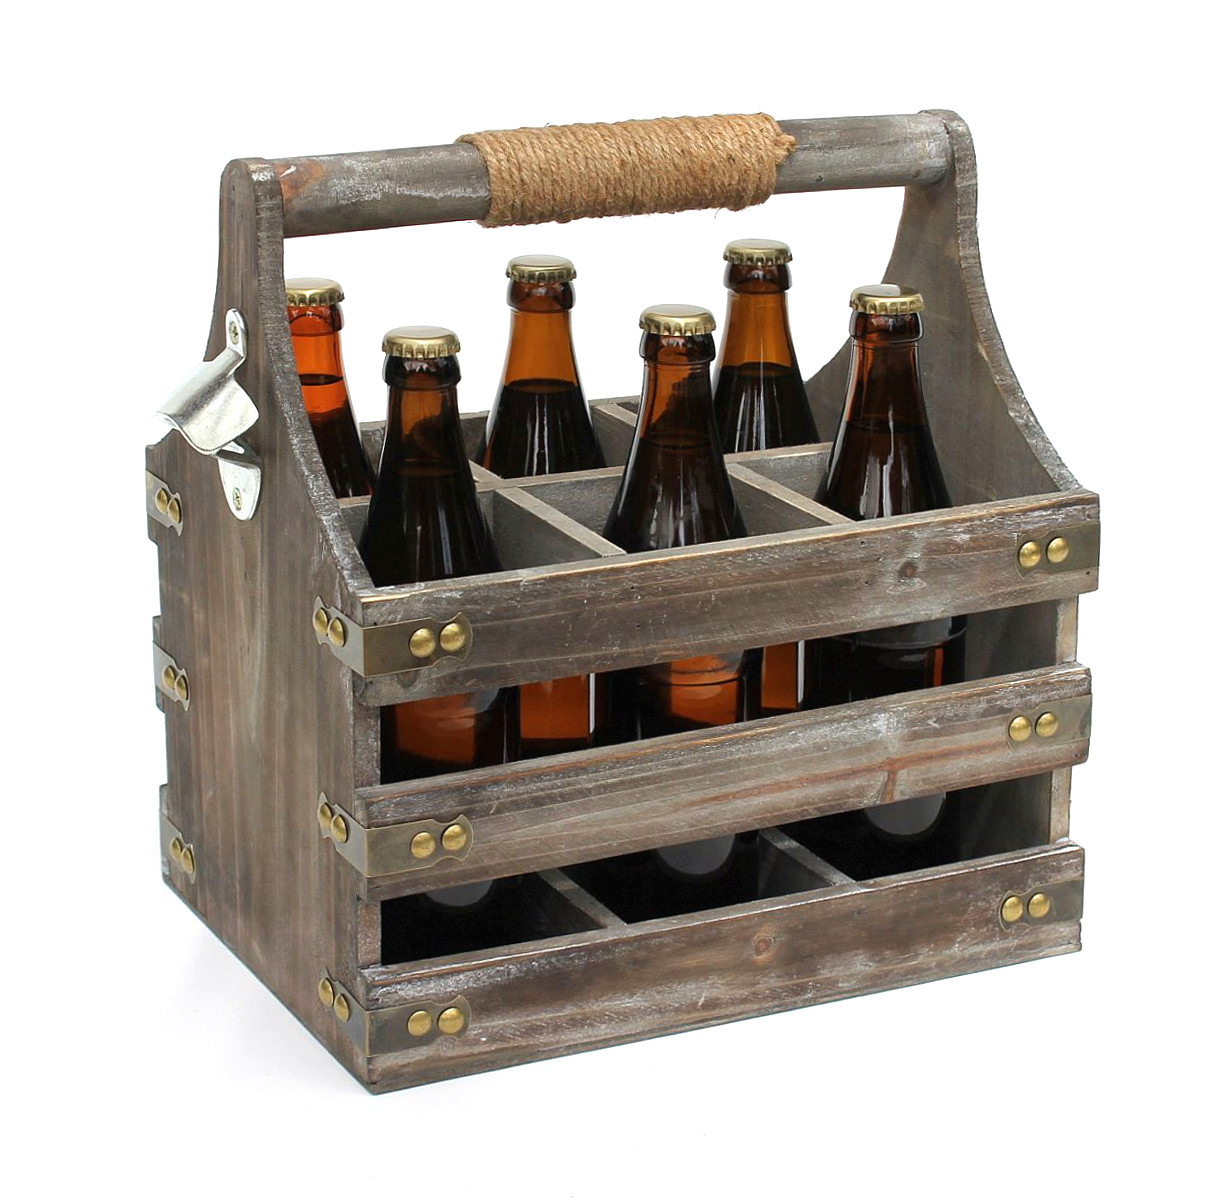 DanDiBo Bierträger aus Holz mit Öffner 93860 Flaschenträger Flaschenöffner Flaschenkorb  Männerhandtasche Männergeschenke-DanDiBo